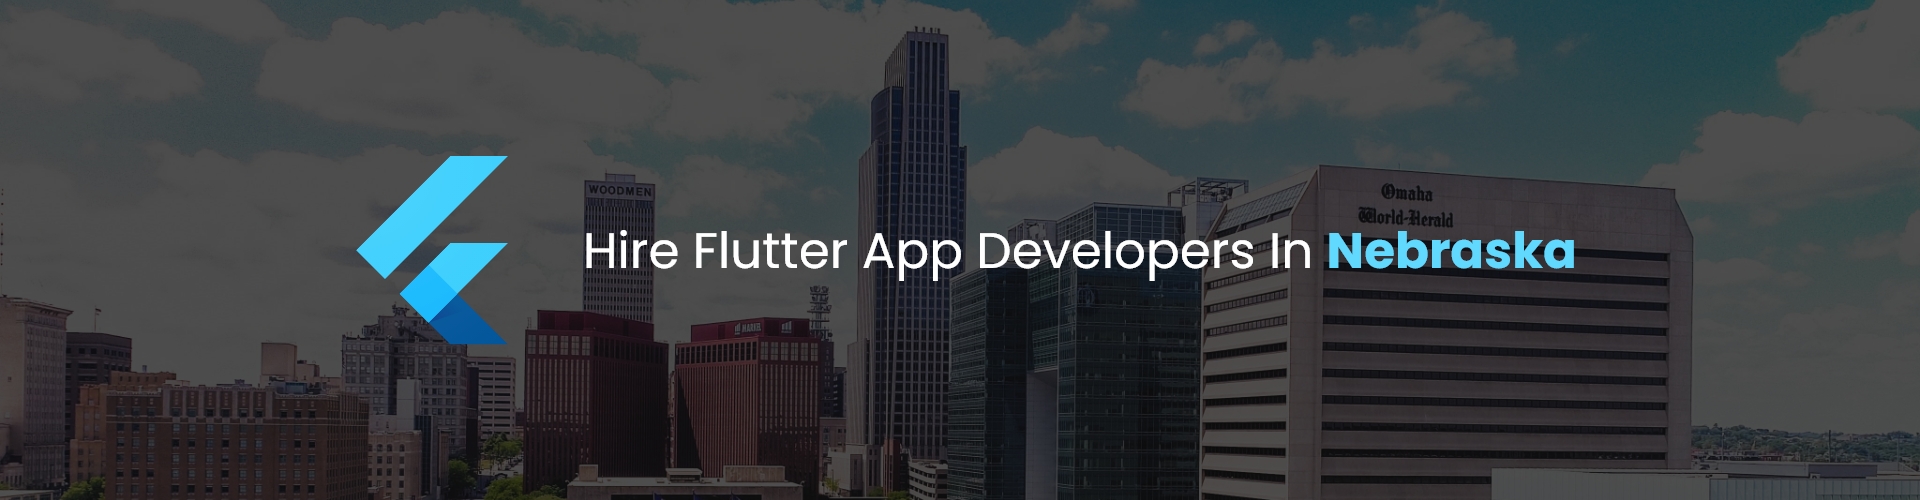 Hire Flutter App Developers in Nebraska